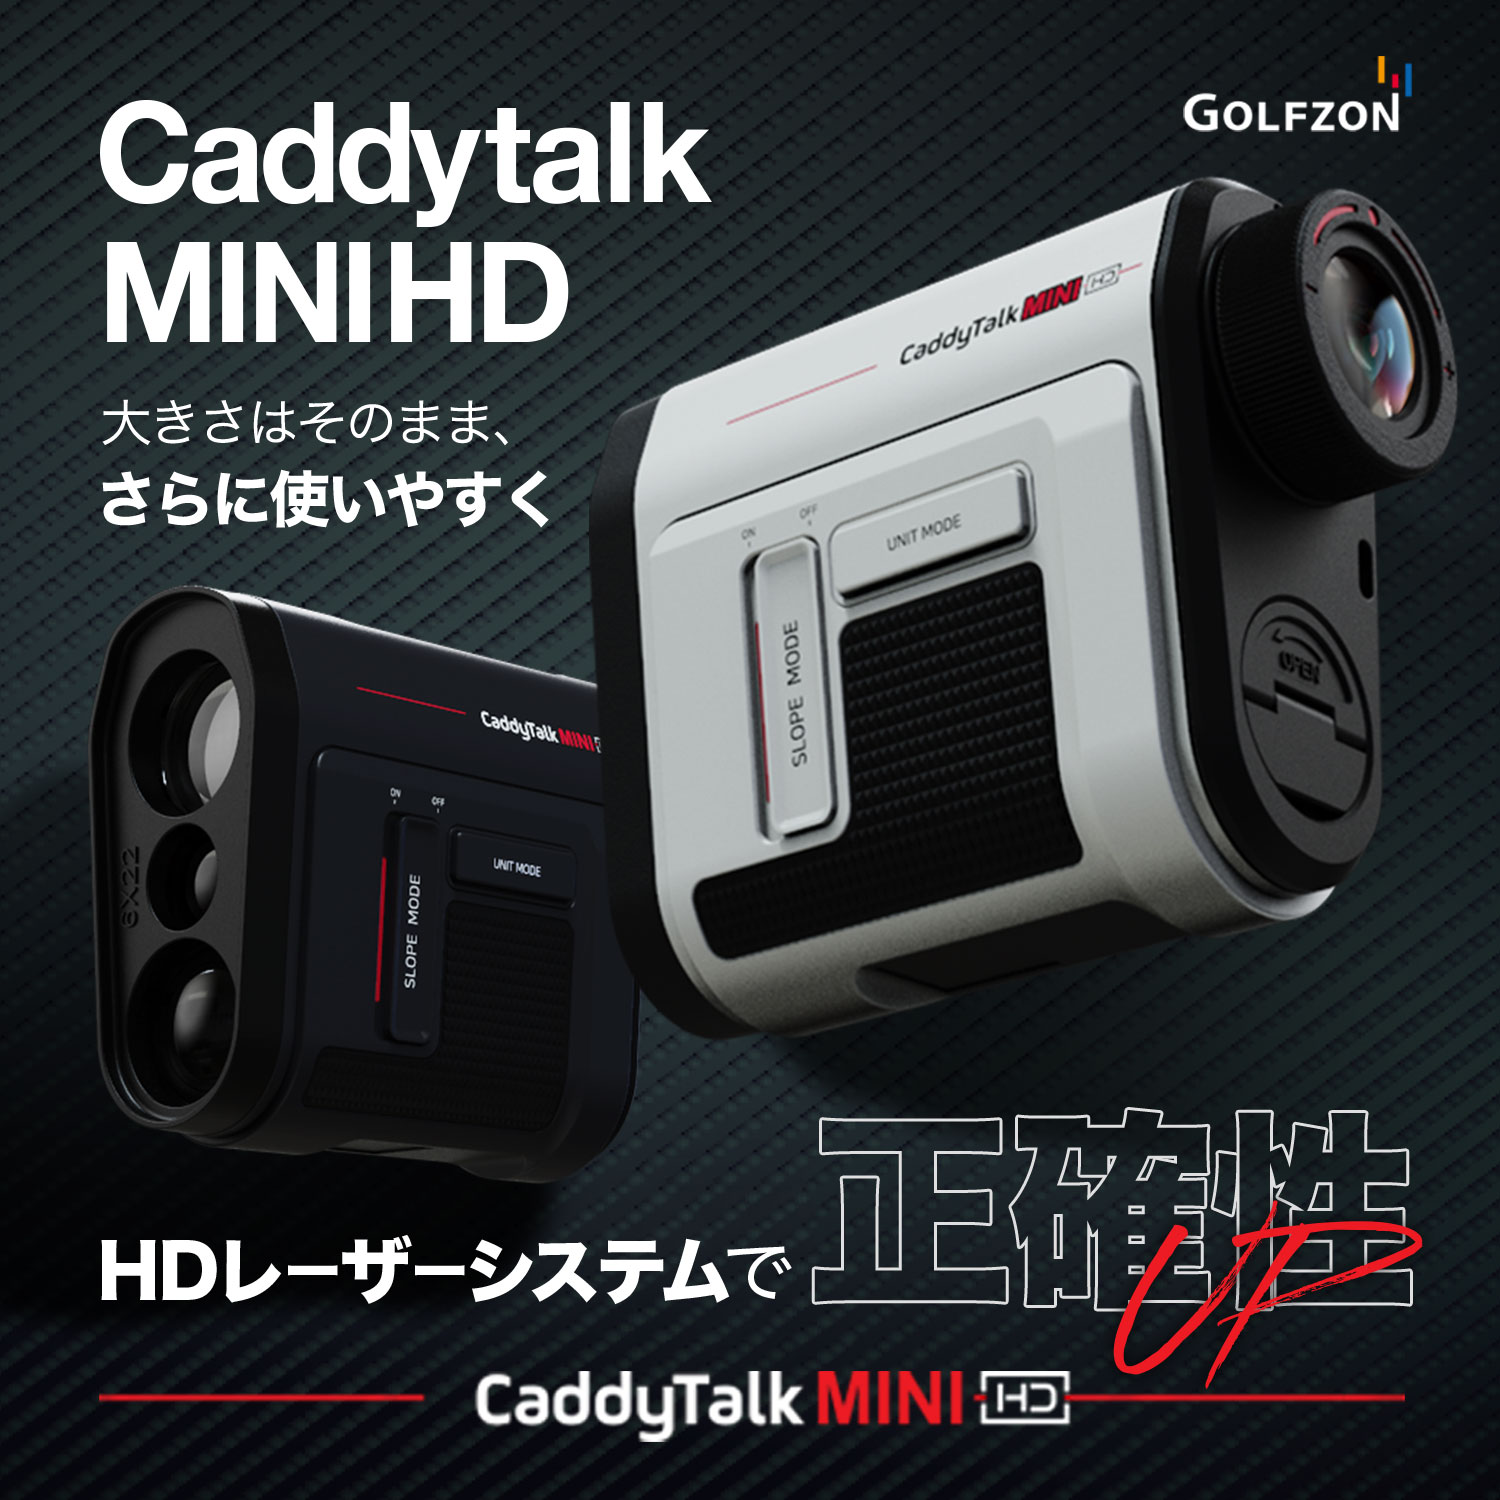 Caddytalk NEW MODEL「Caddytalk MINI-HD 」発売開始 - ゴルフゾン